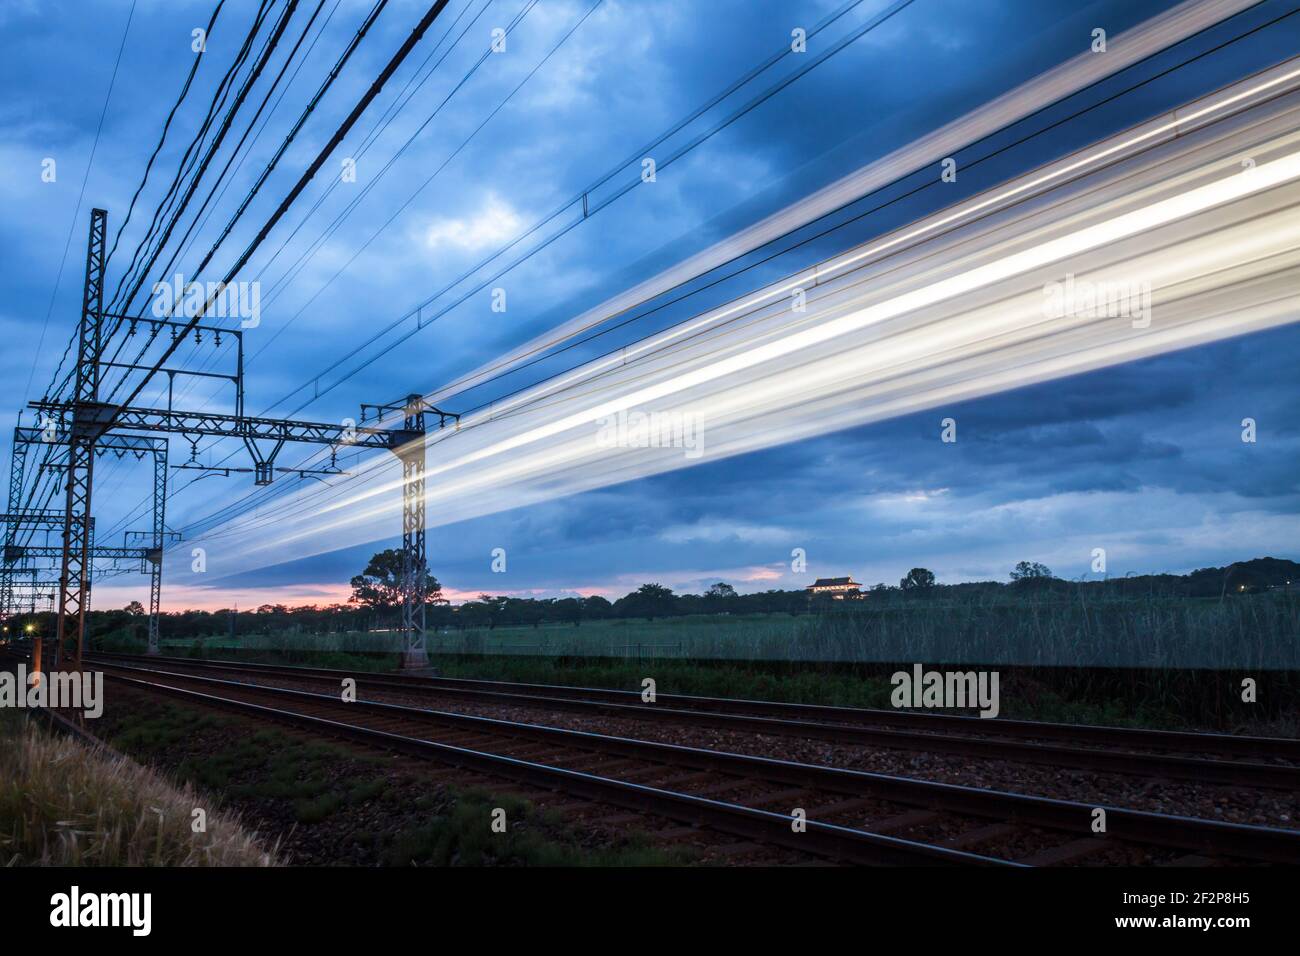 Larga exposición de un tren corriendo por una línea de ferrocarril al atardecer en Nara, Japón Foto de stock